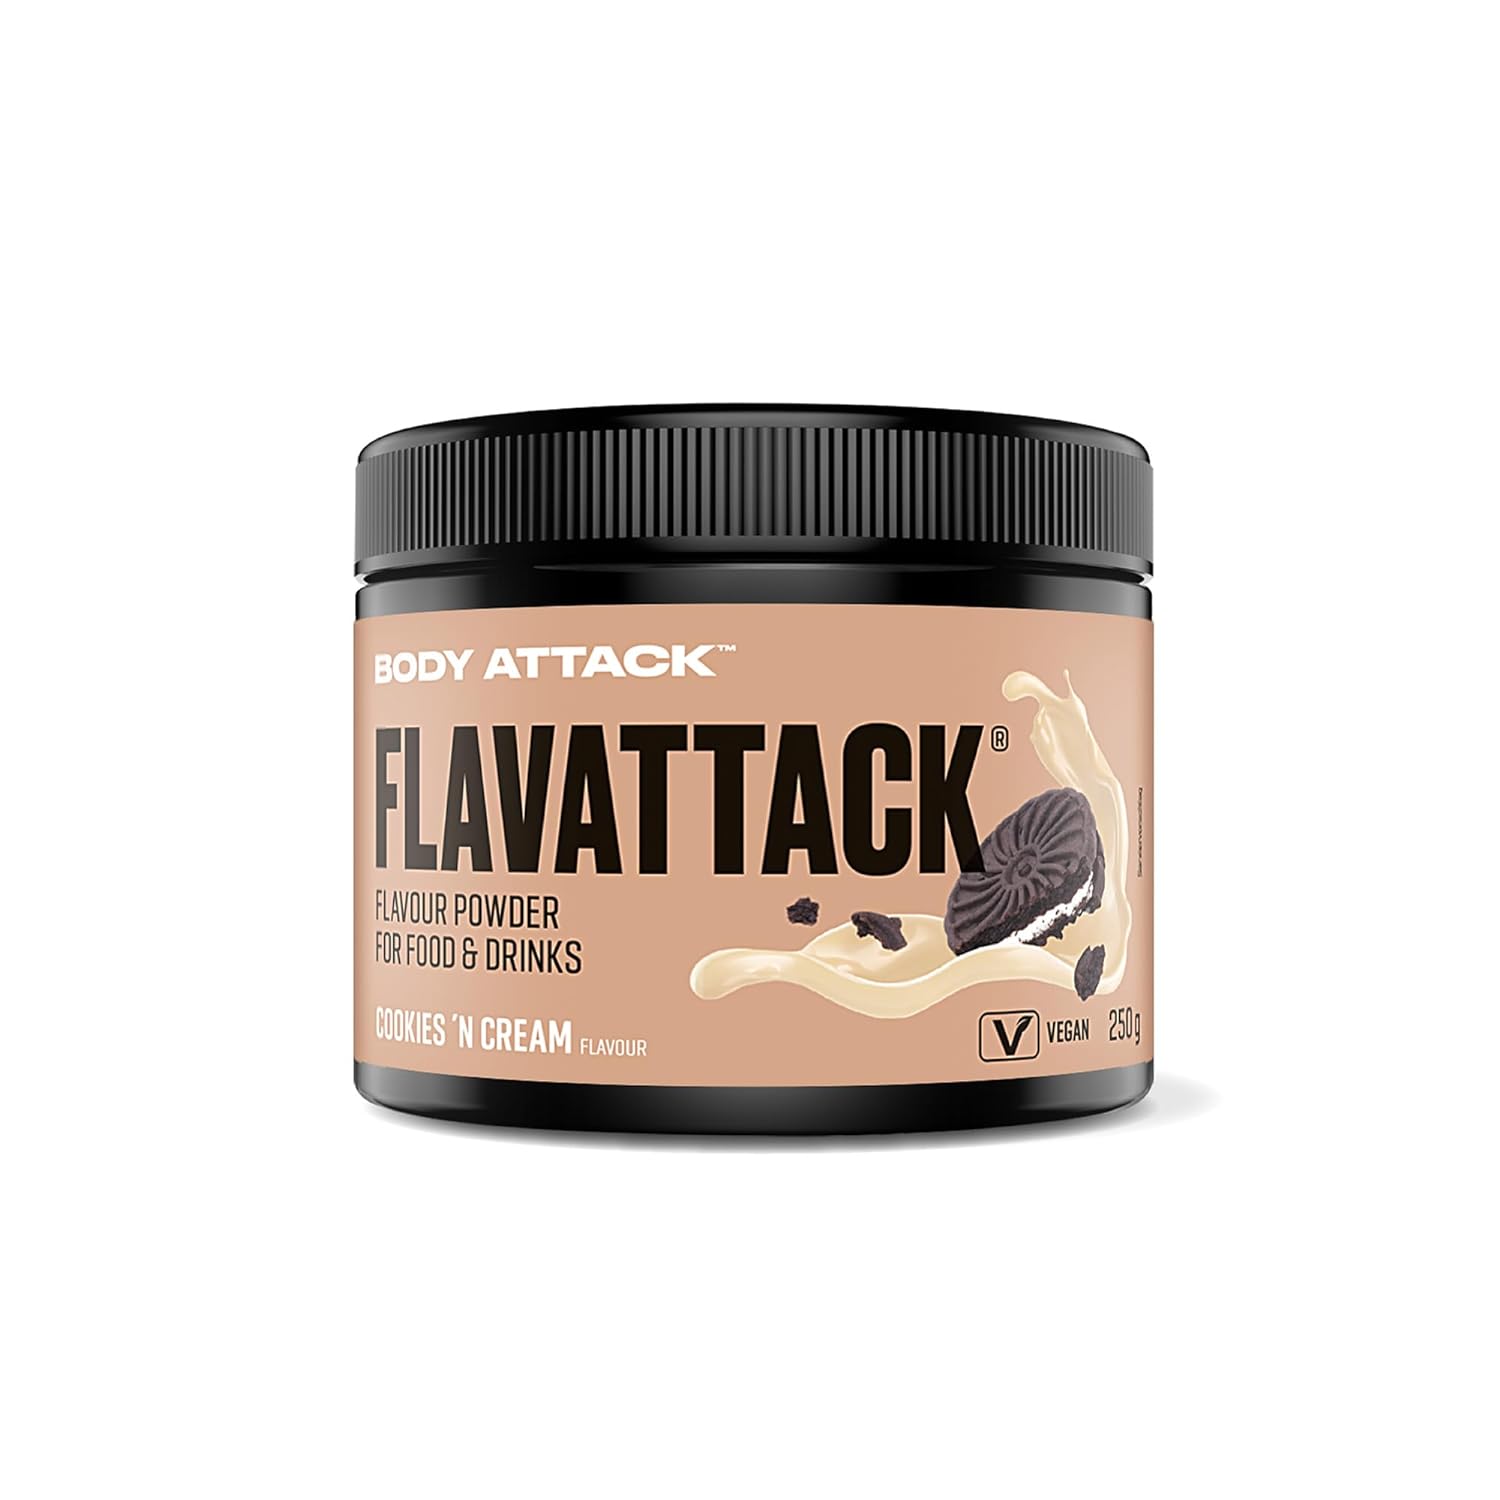 Body Attack Flavattack (250g Dose)